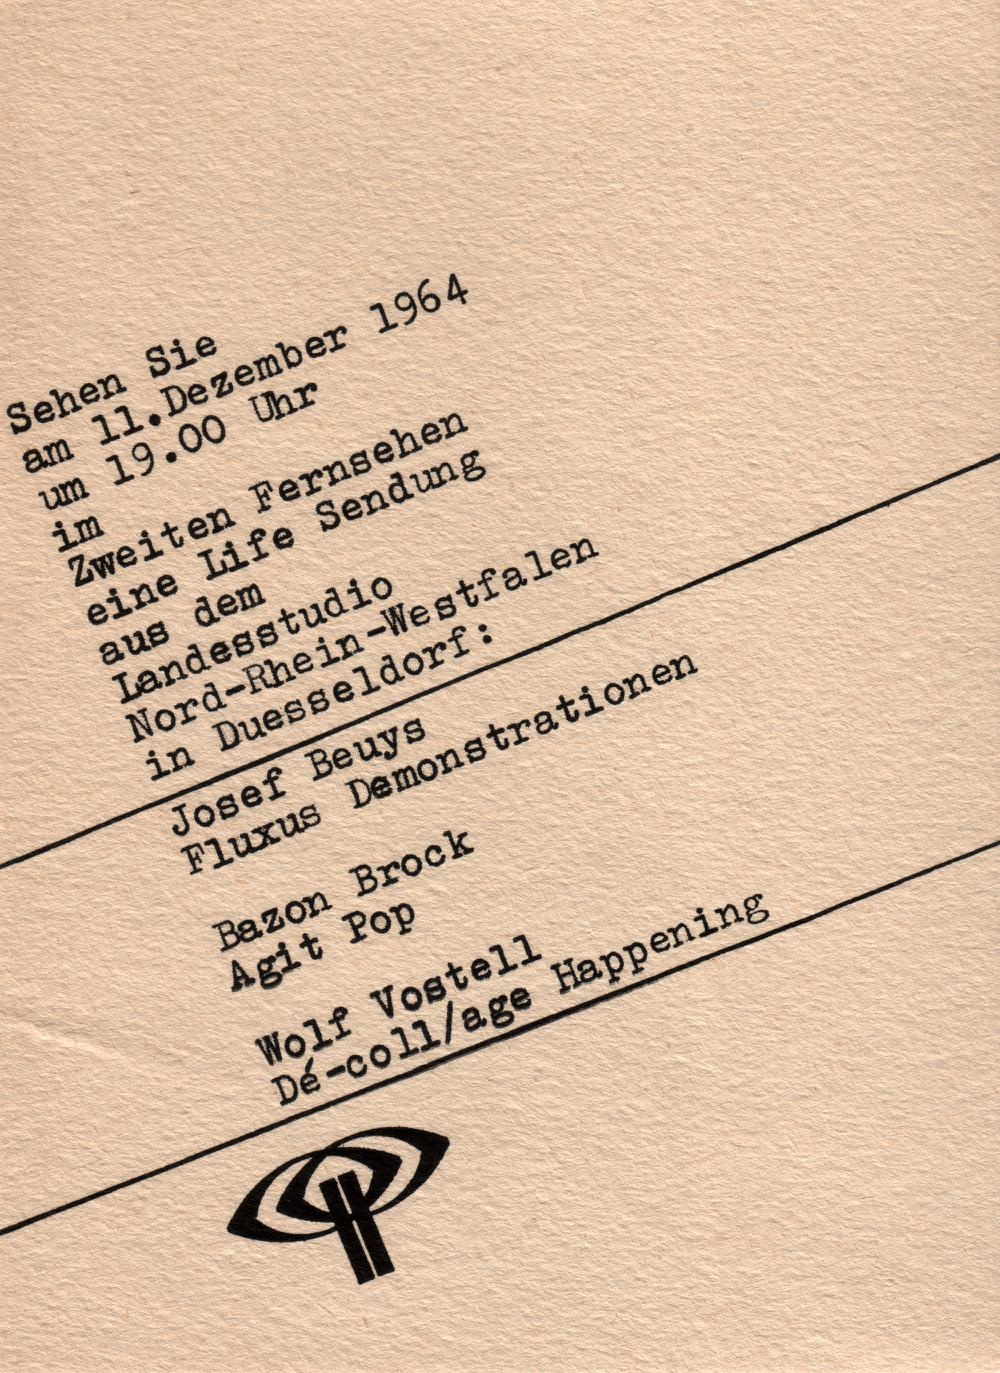 Agit-Pop (Brock) - Fluxus (Beuys) - De.coll/age (Vostell), Bild: Flyer zur Livesendung.